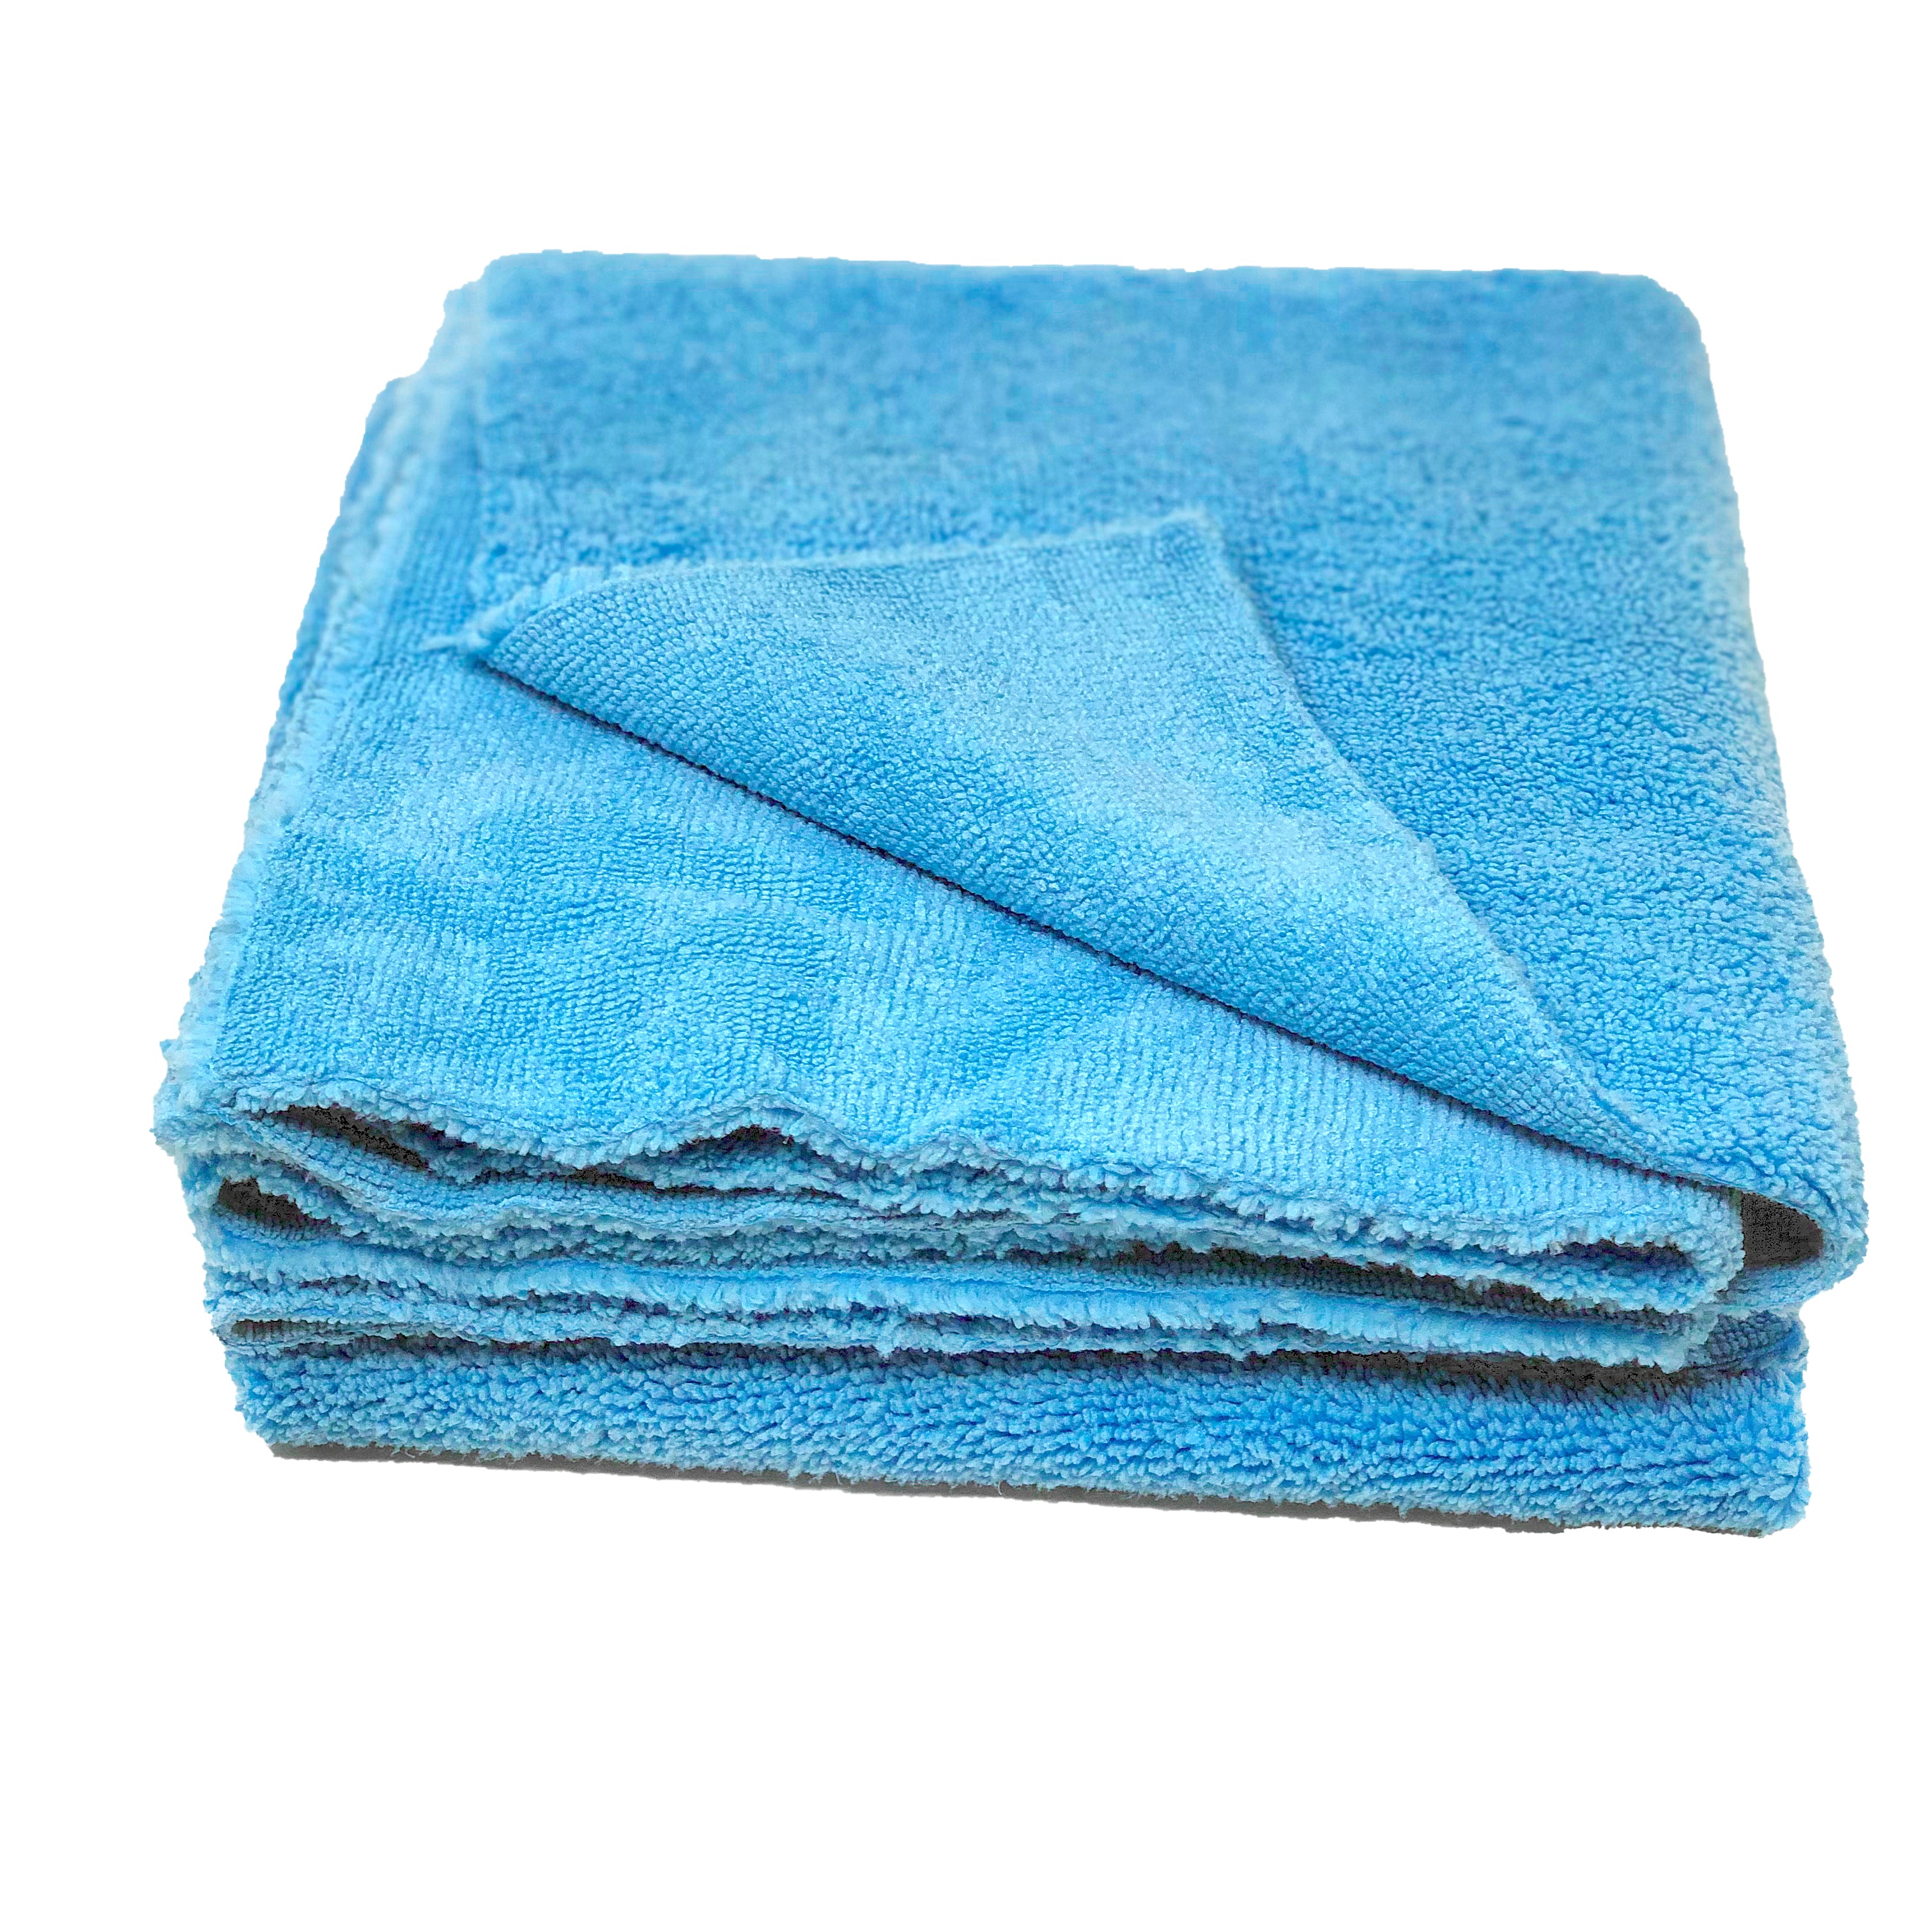 DETAIL ARENA - 380 Dual Pile Microfiber Towel